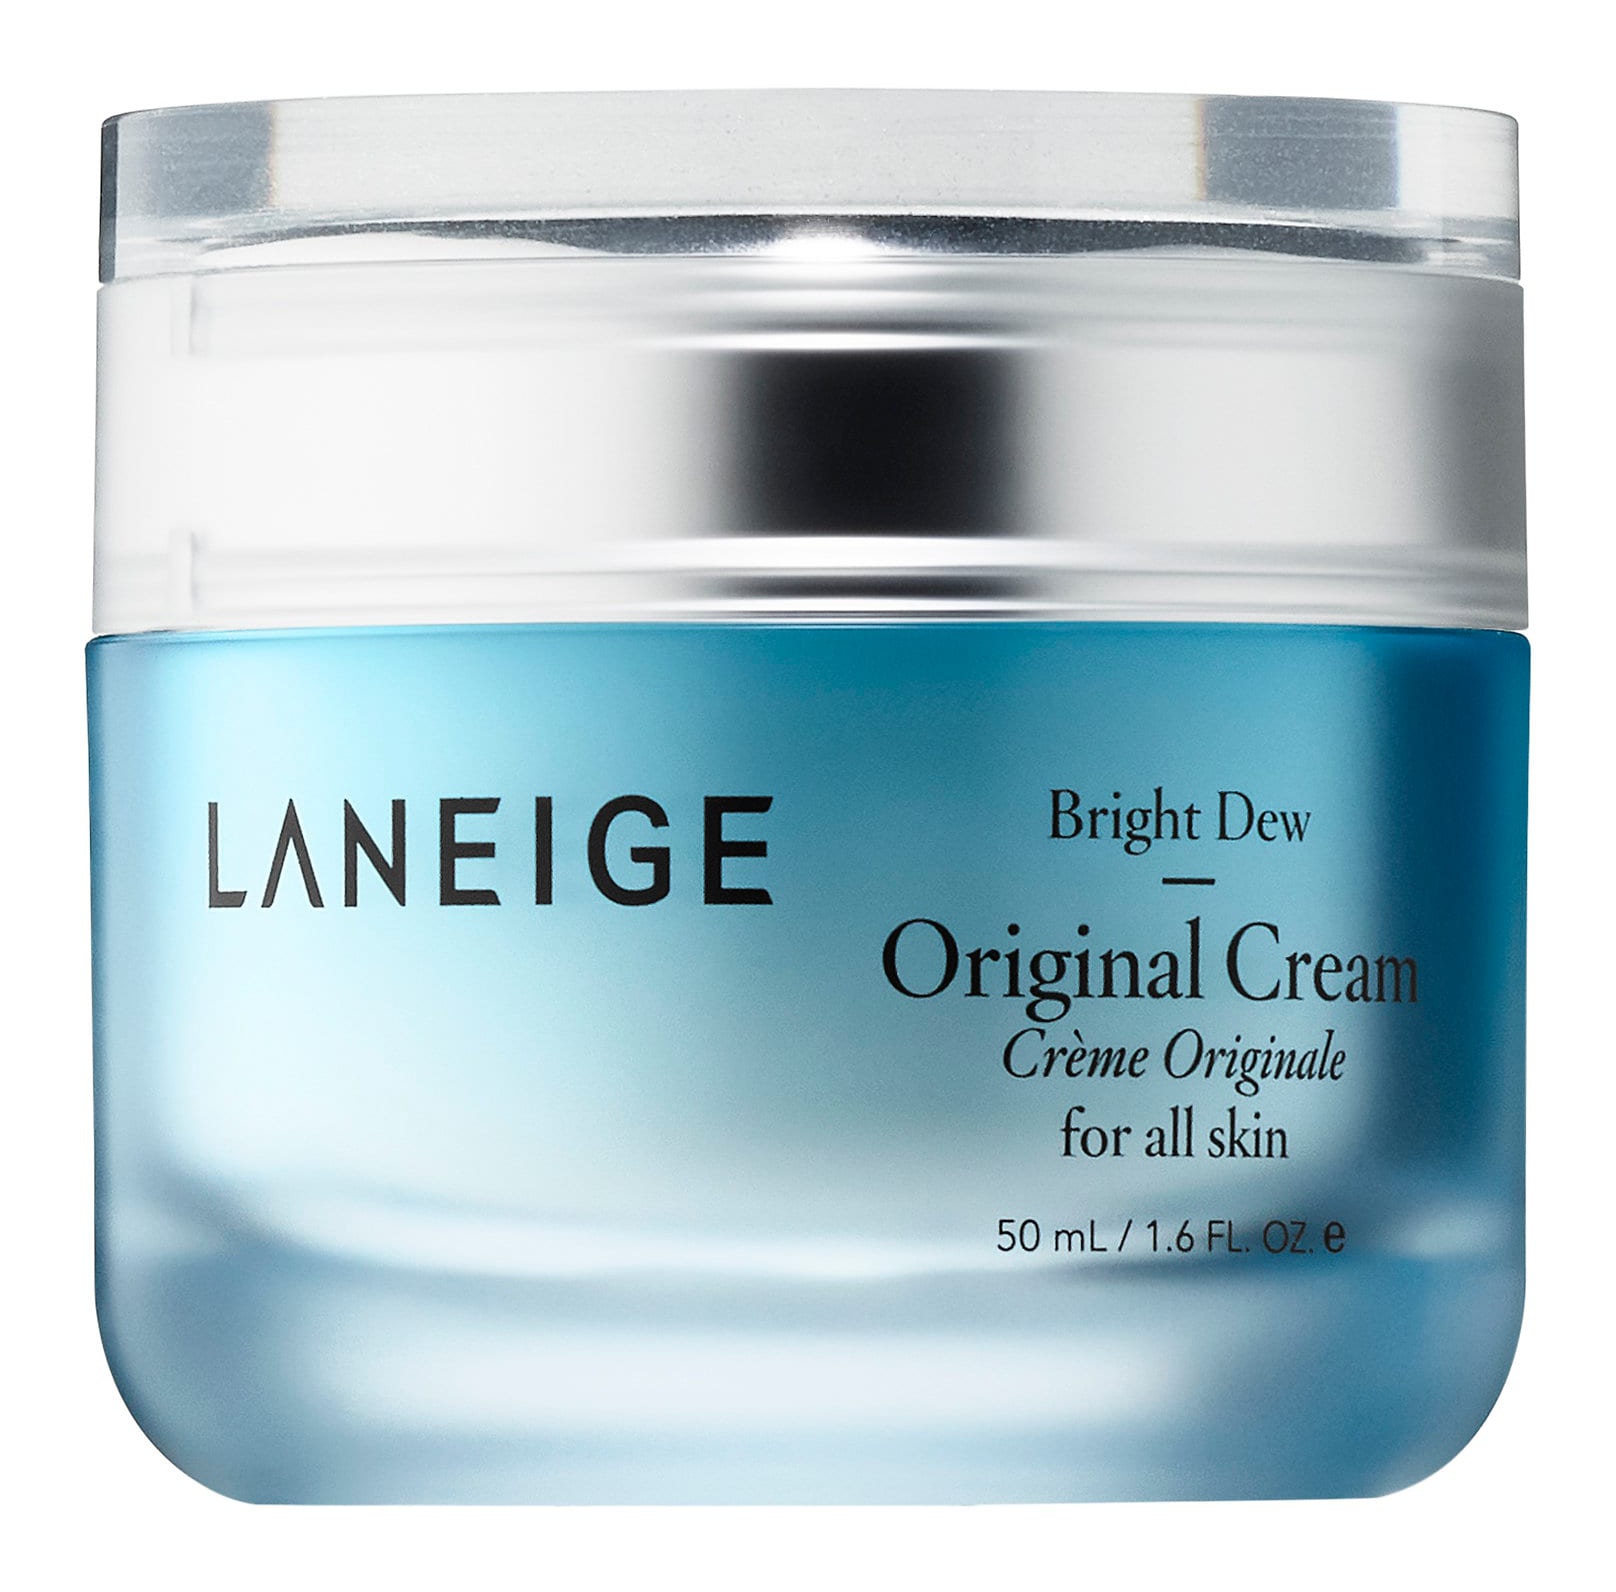 LANEIGE Bright Dew Original Cream